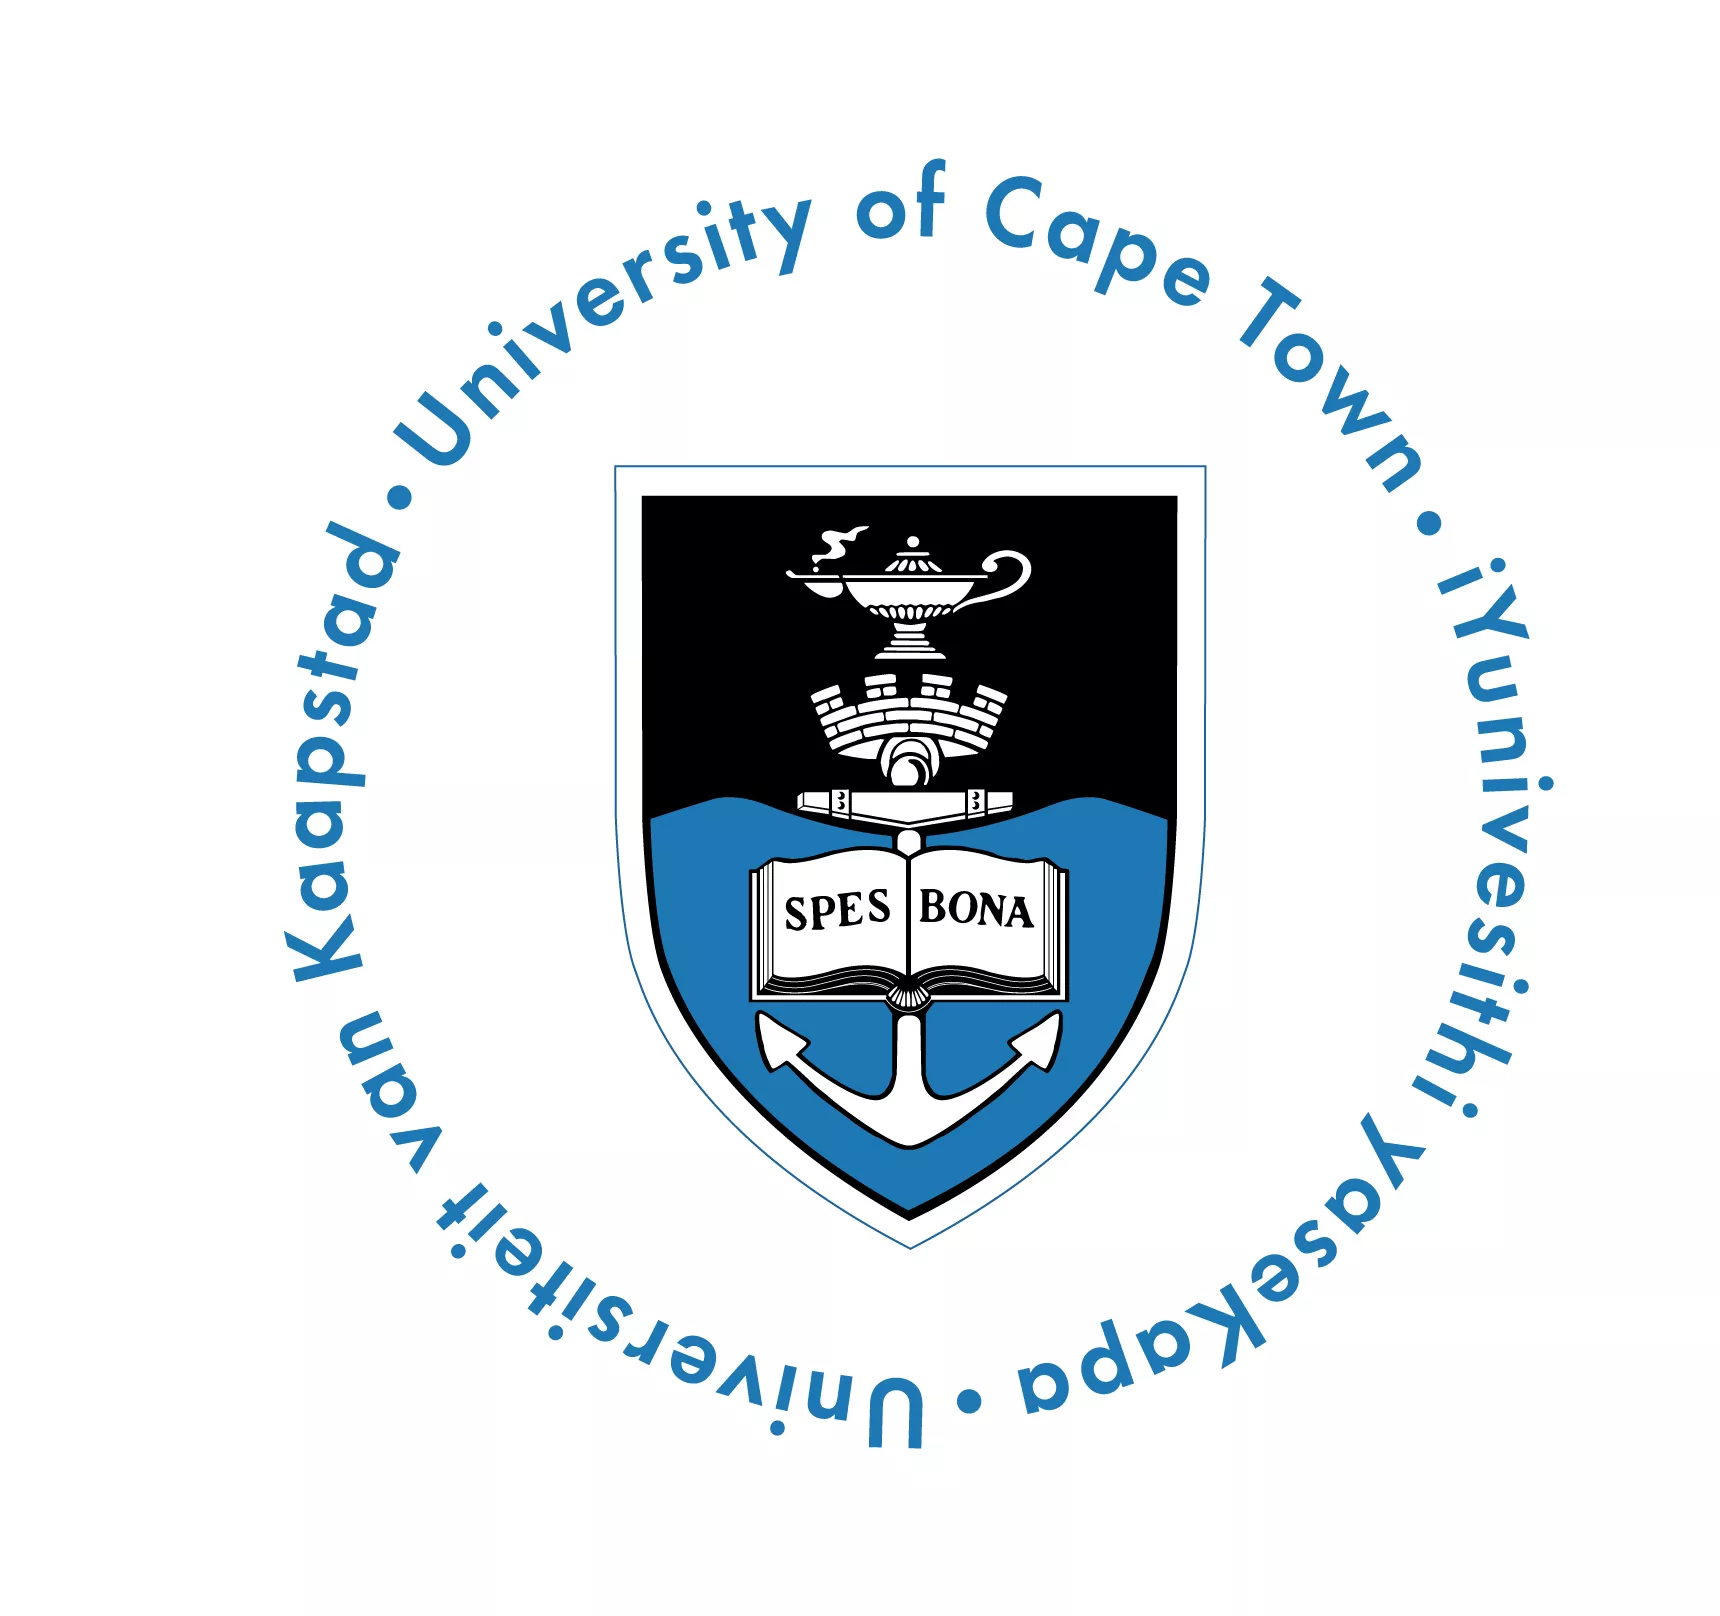 Bourses de recherche de l’Université du Cap (MPhil) en éducation en sciences de la santé 2020